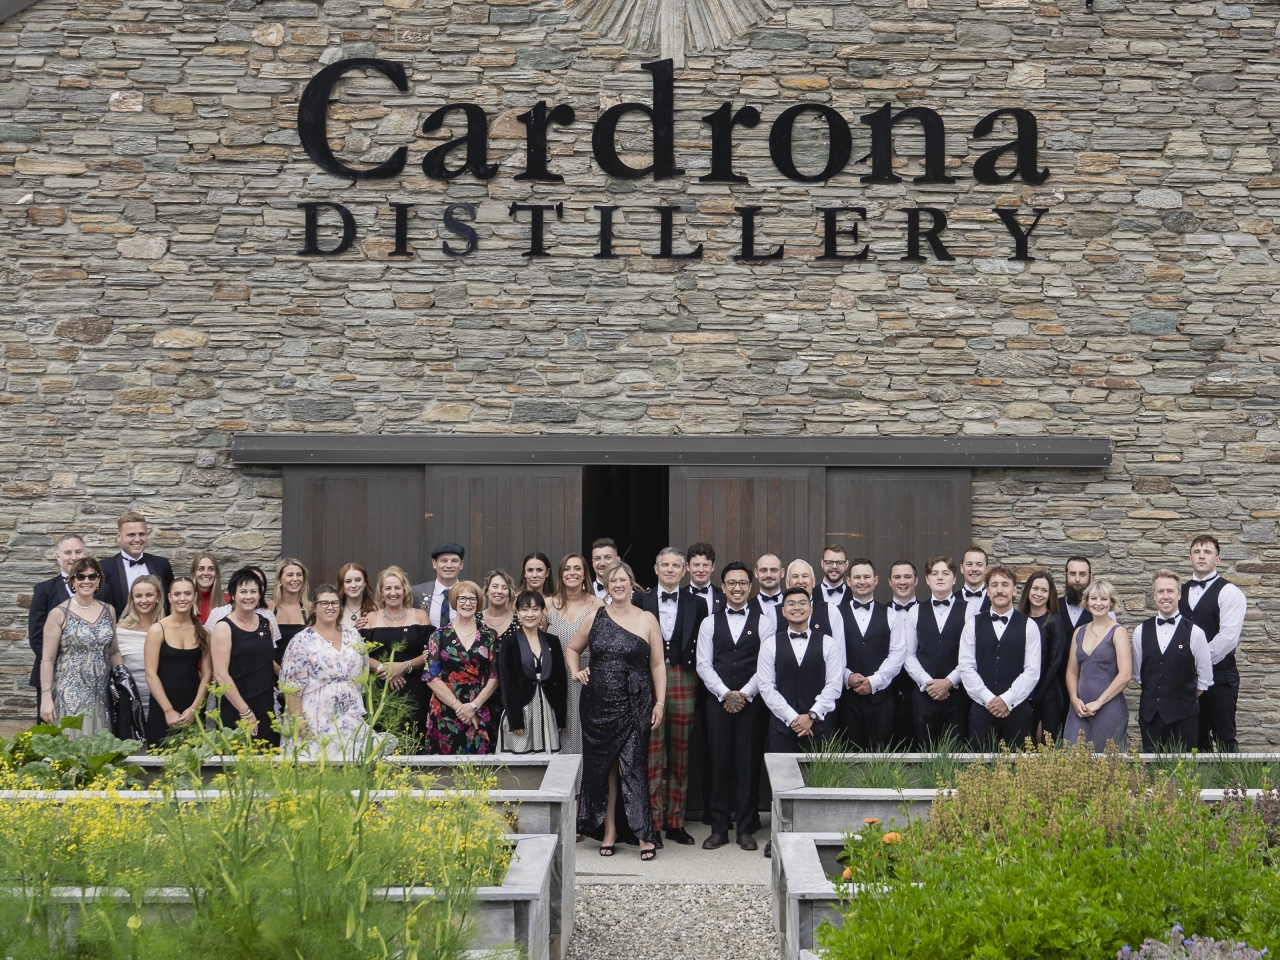 Cardrona Distillery Group 